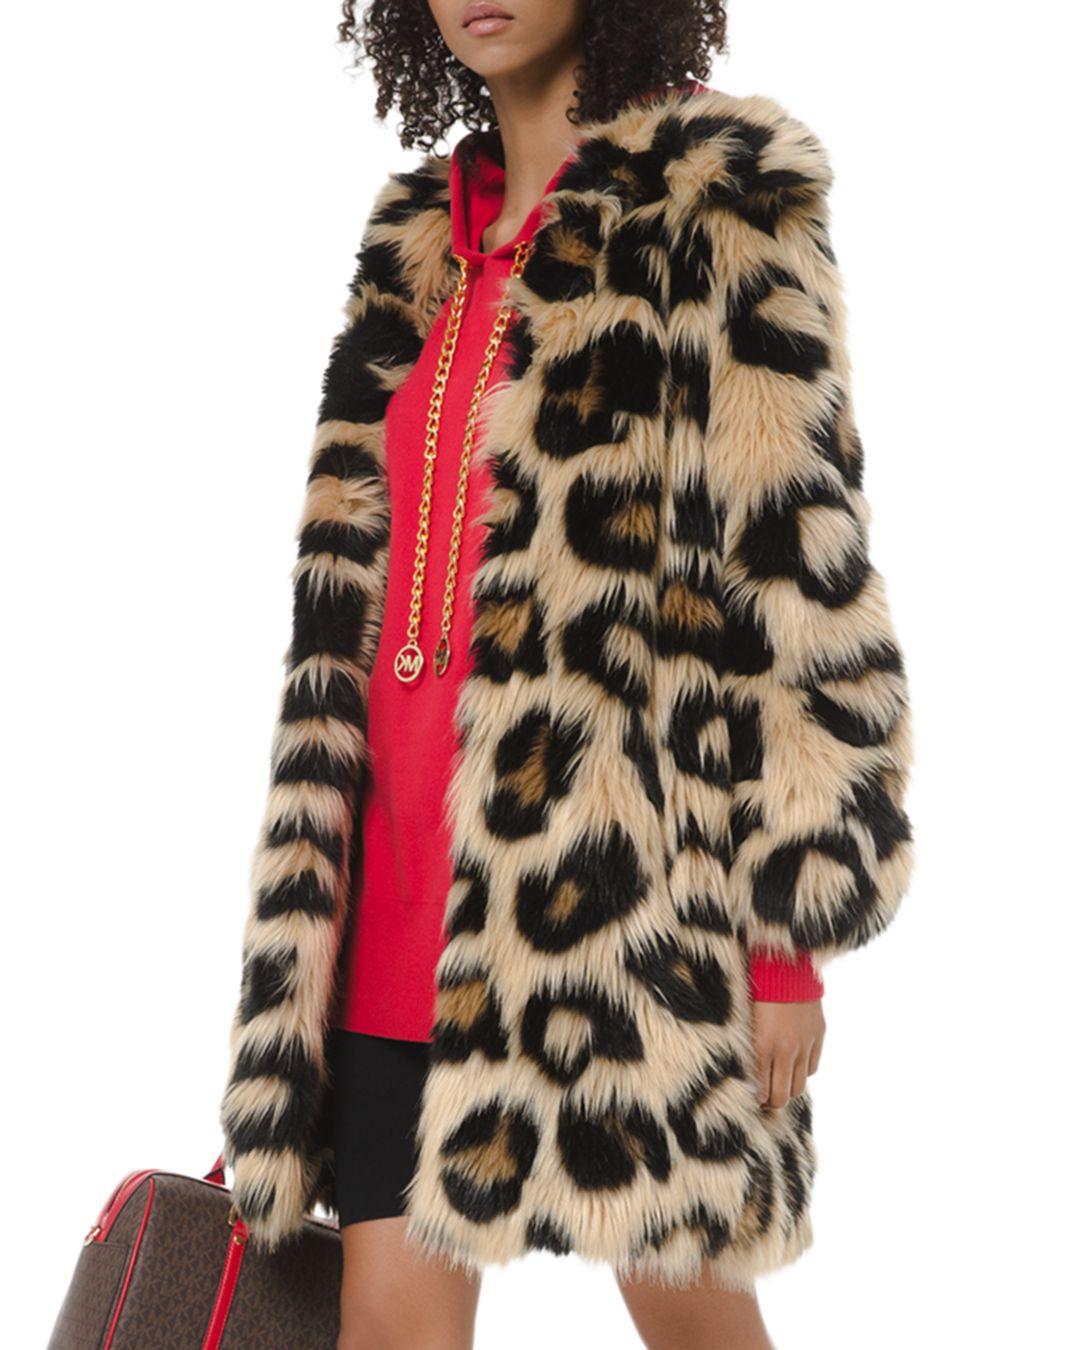 Chi tiết 64+ về michael kors faux fur coat - Giày nam đẹp